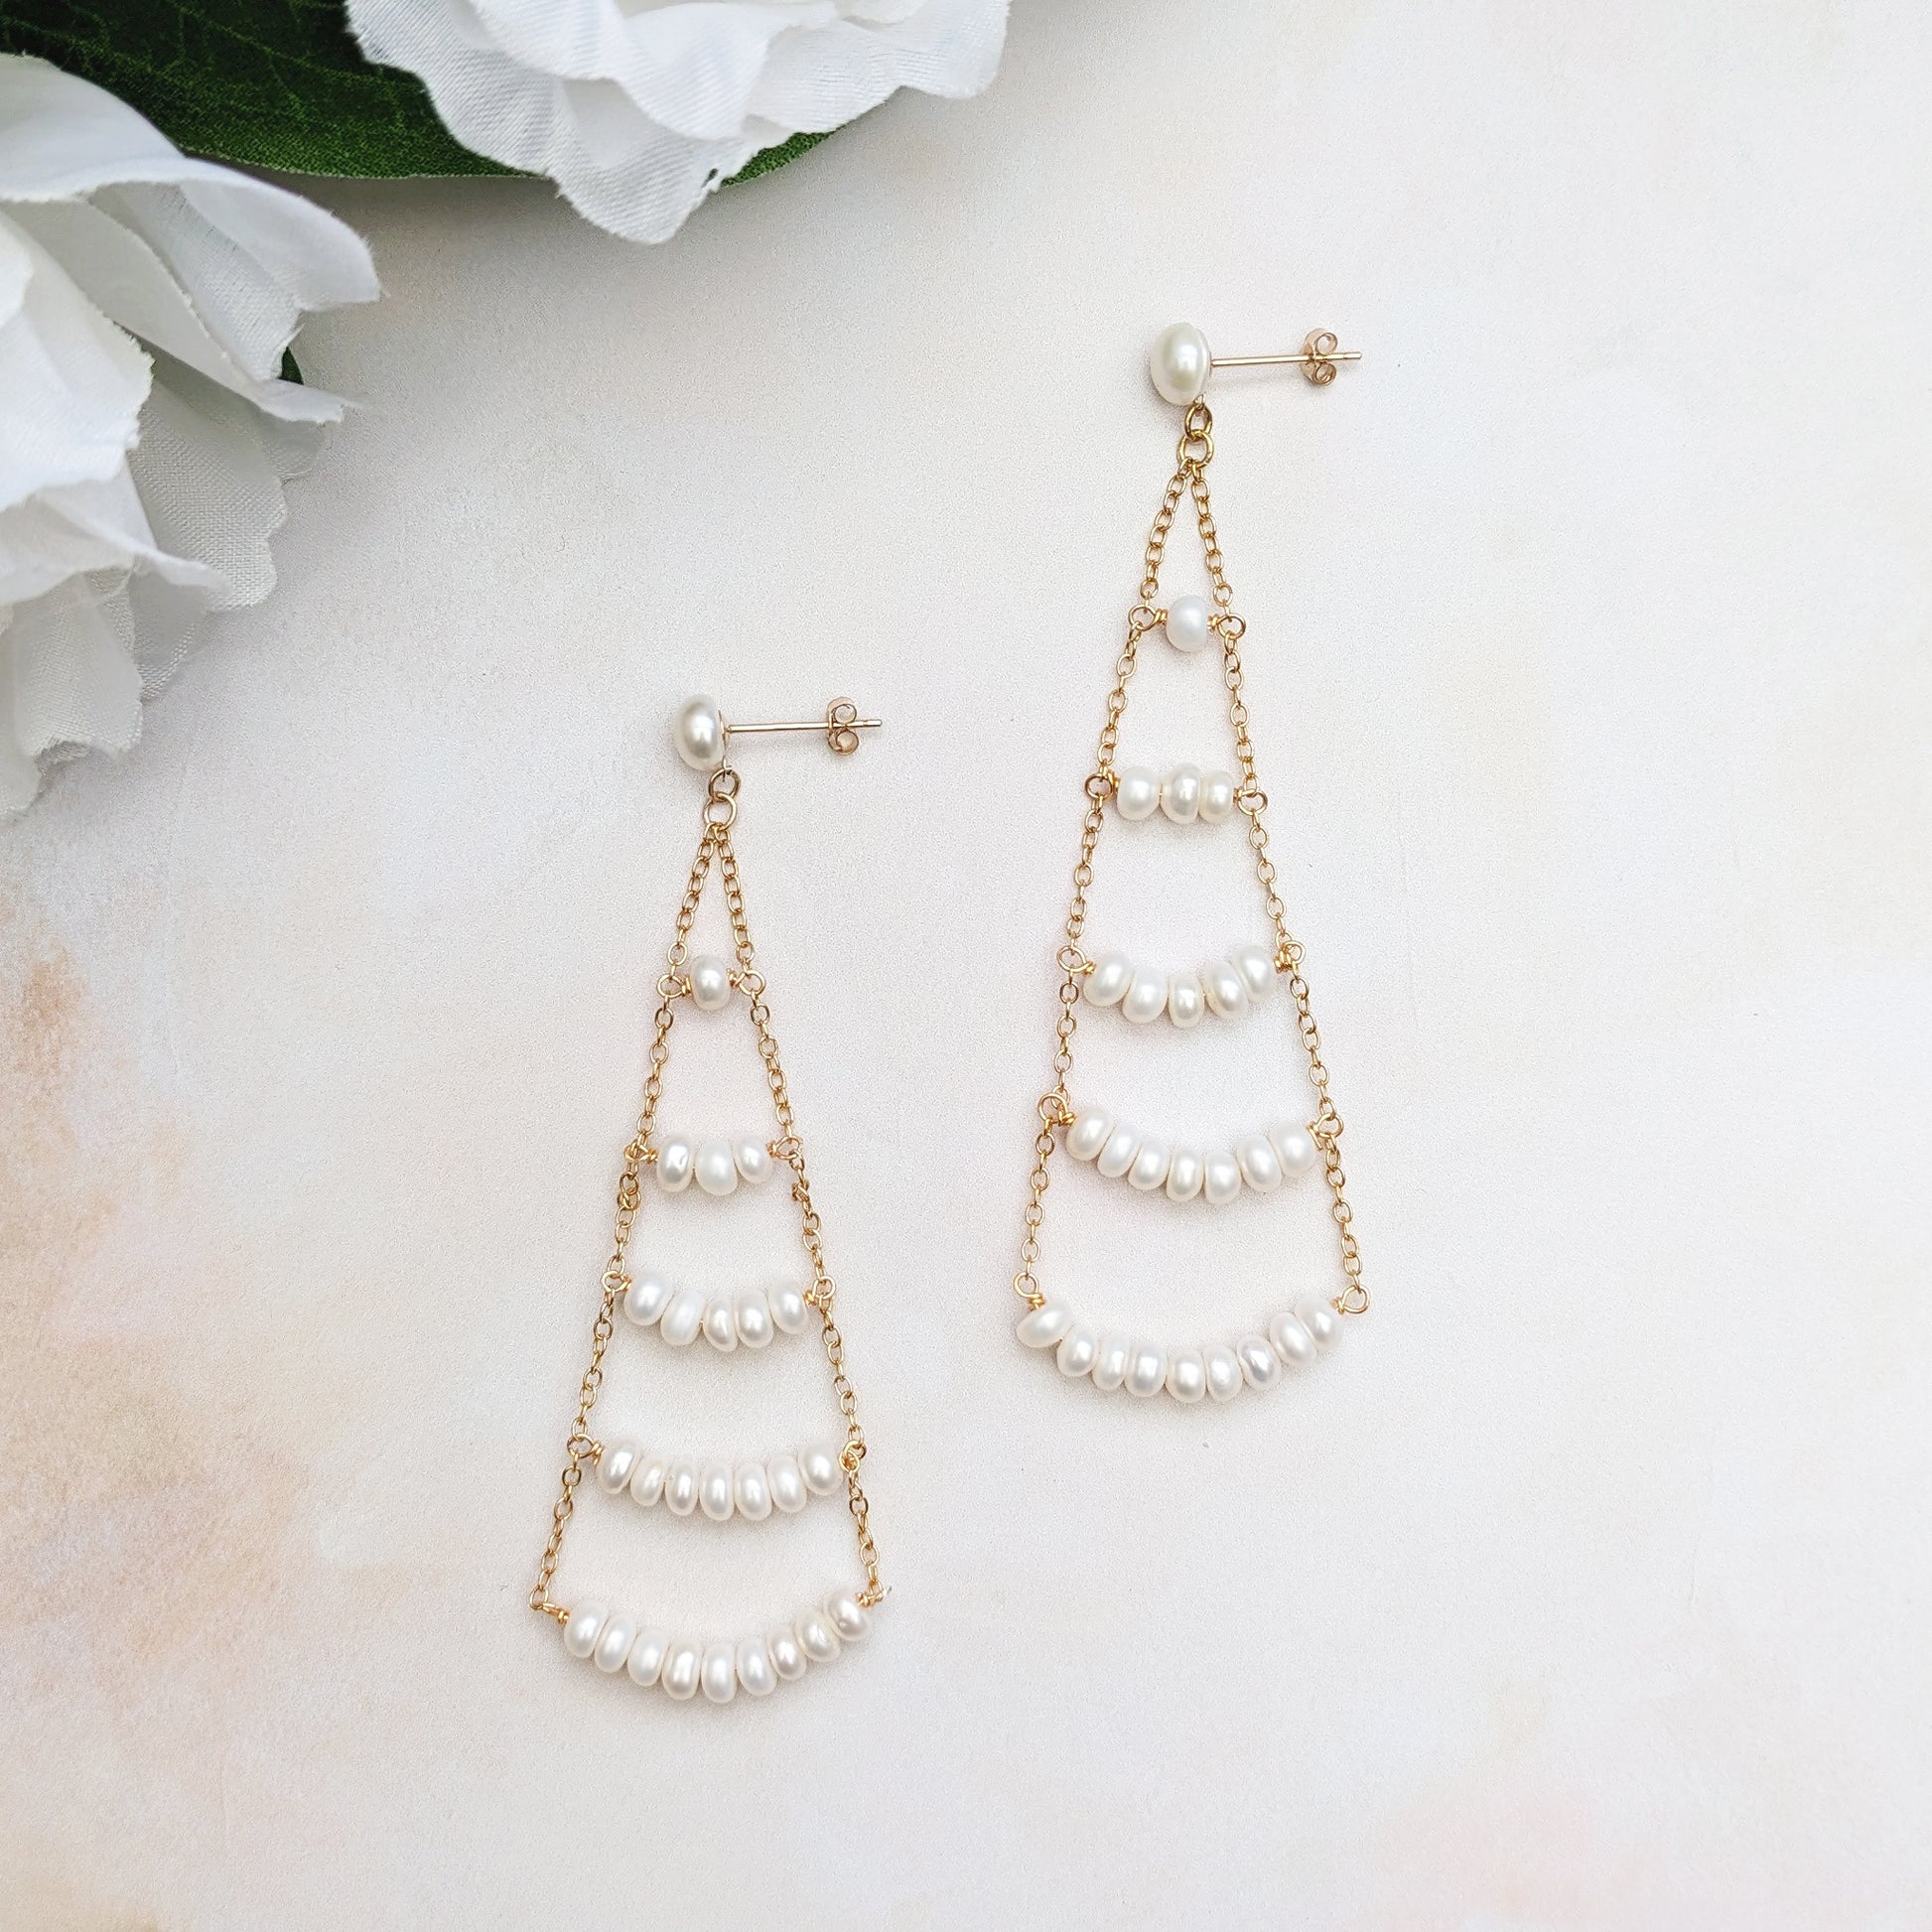 Statement gold pearl chandelier earrings - Susie Warner